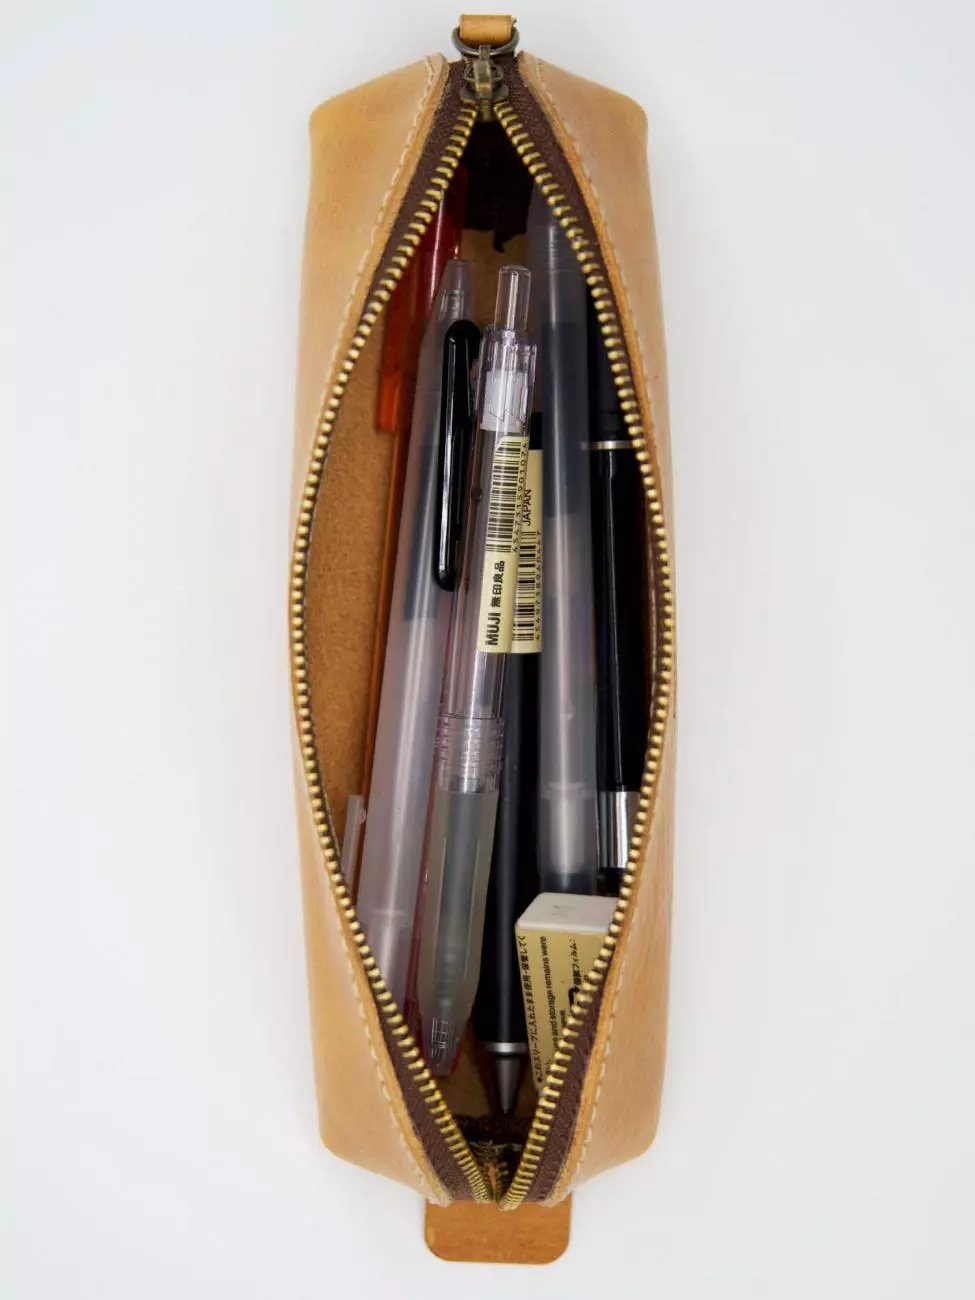 9 - Pencil case for pens